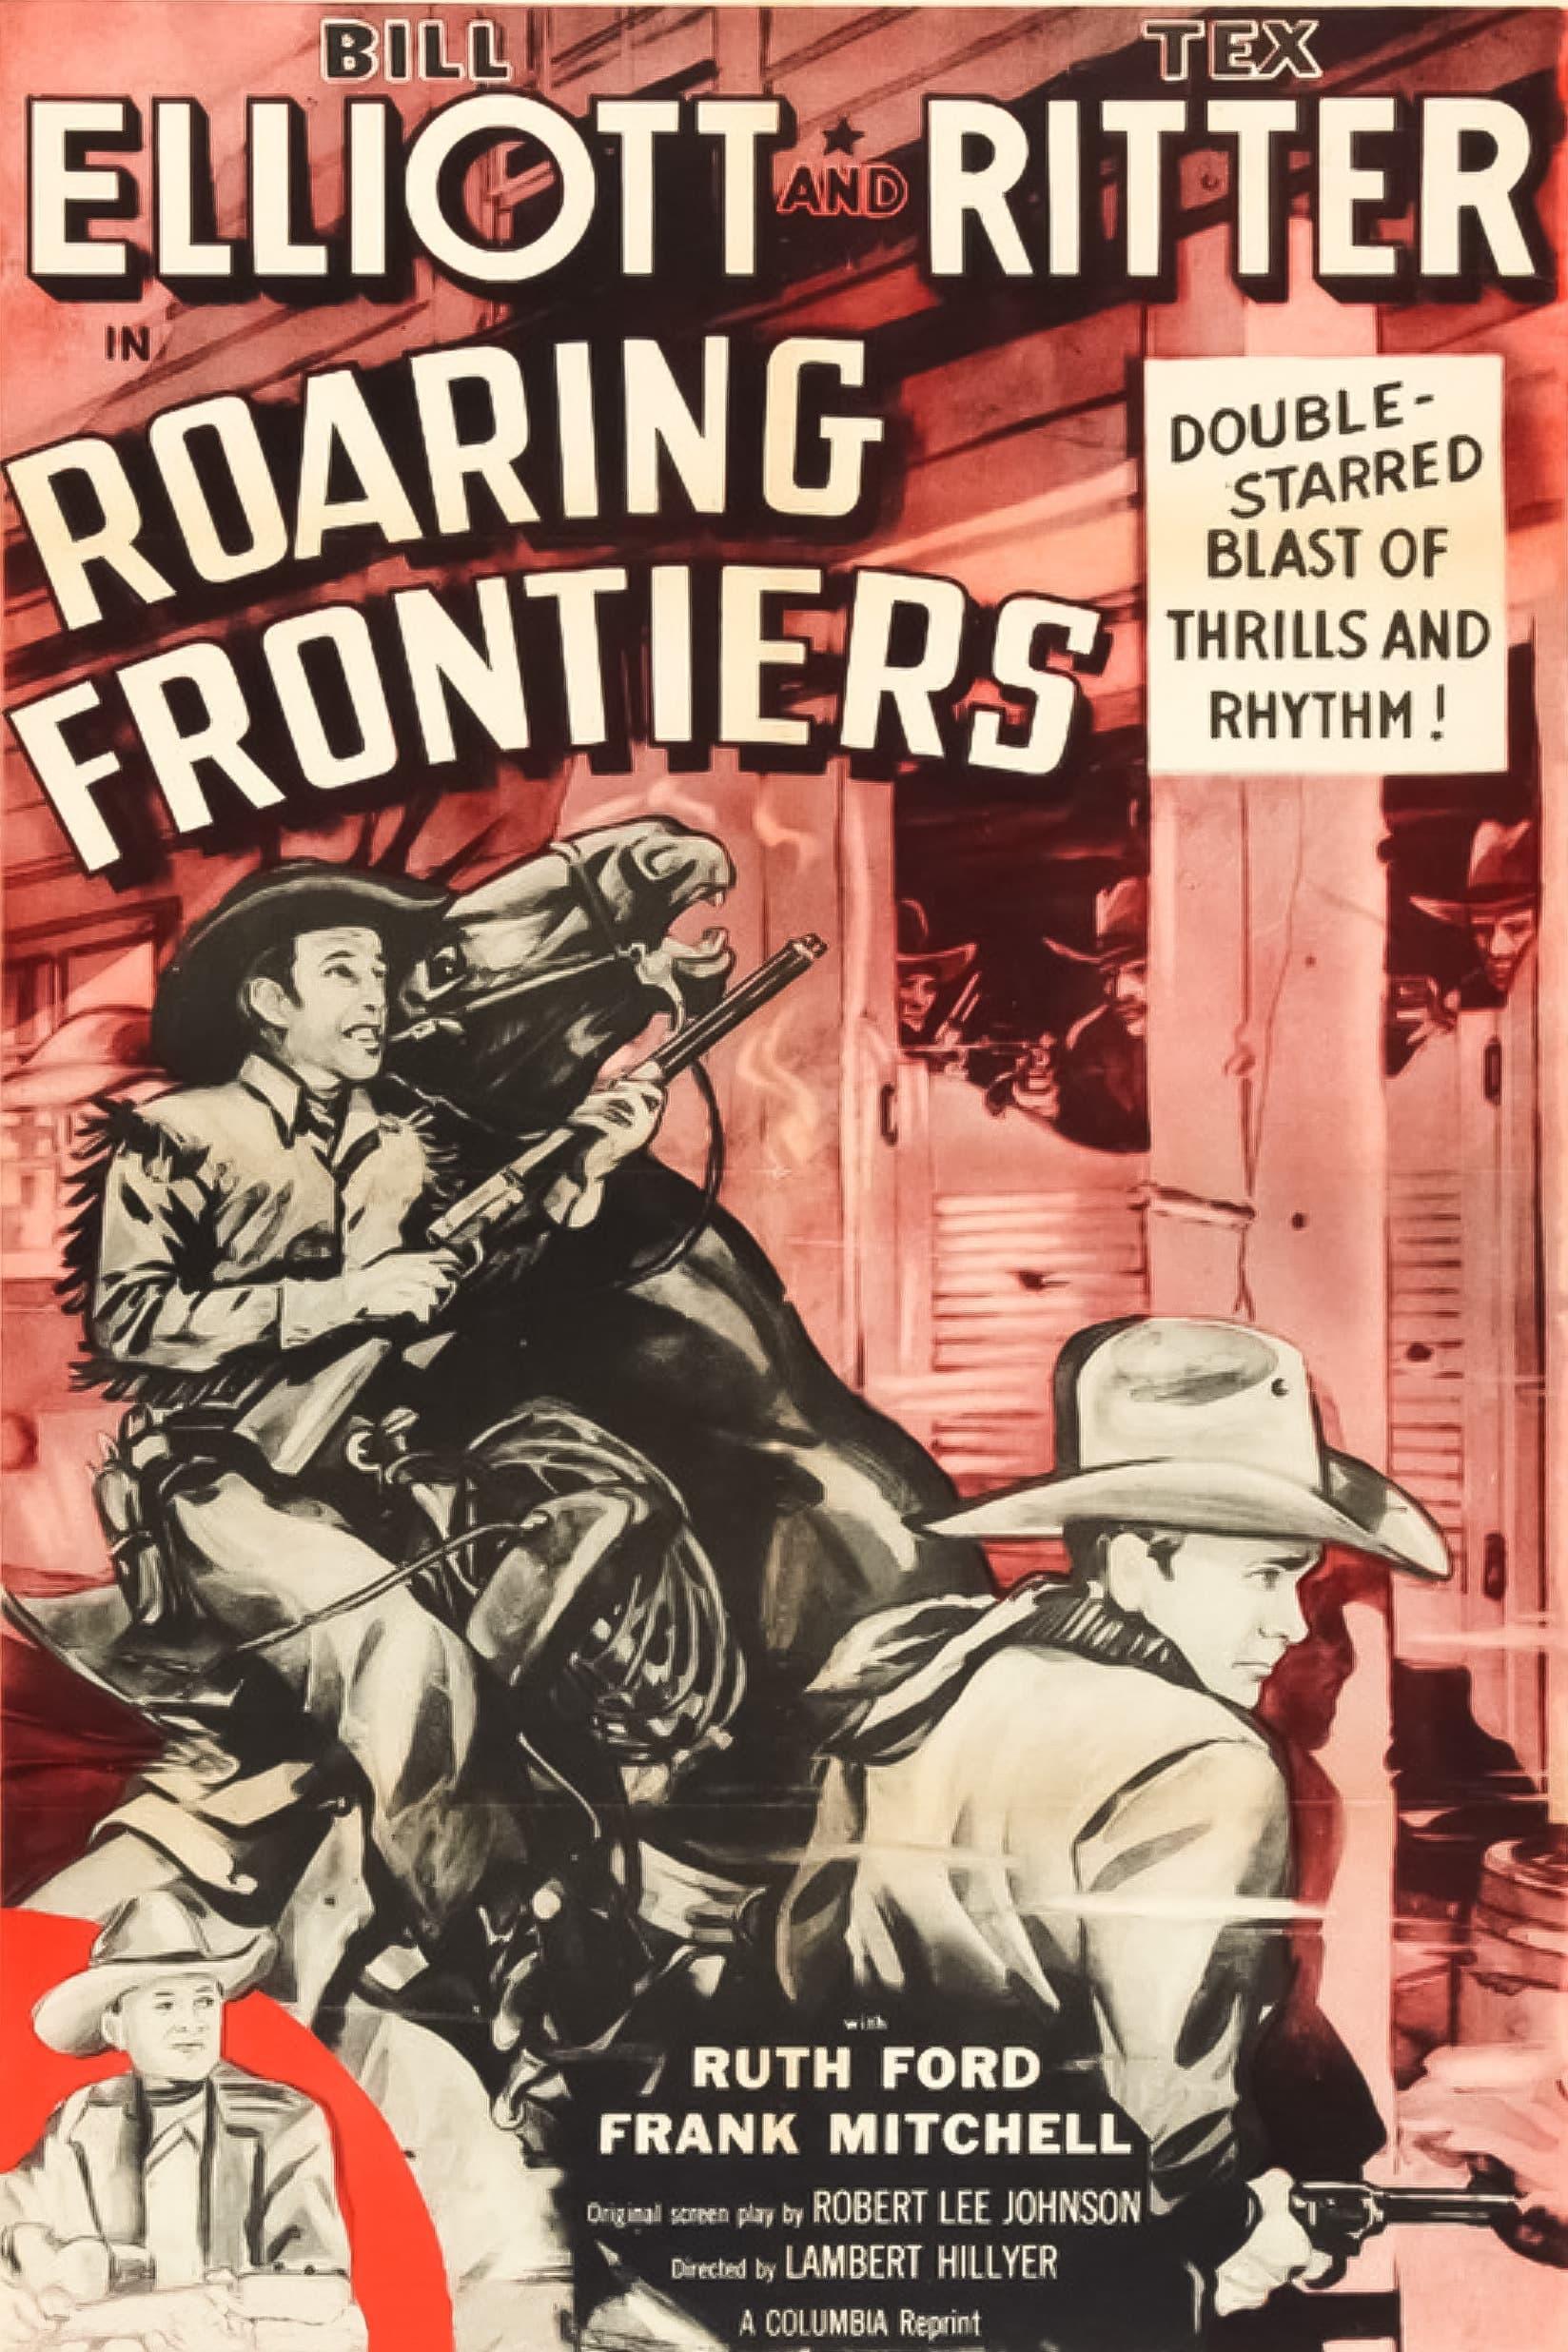 Roaring Frontiers poster